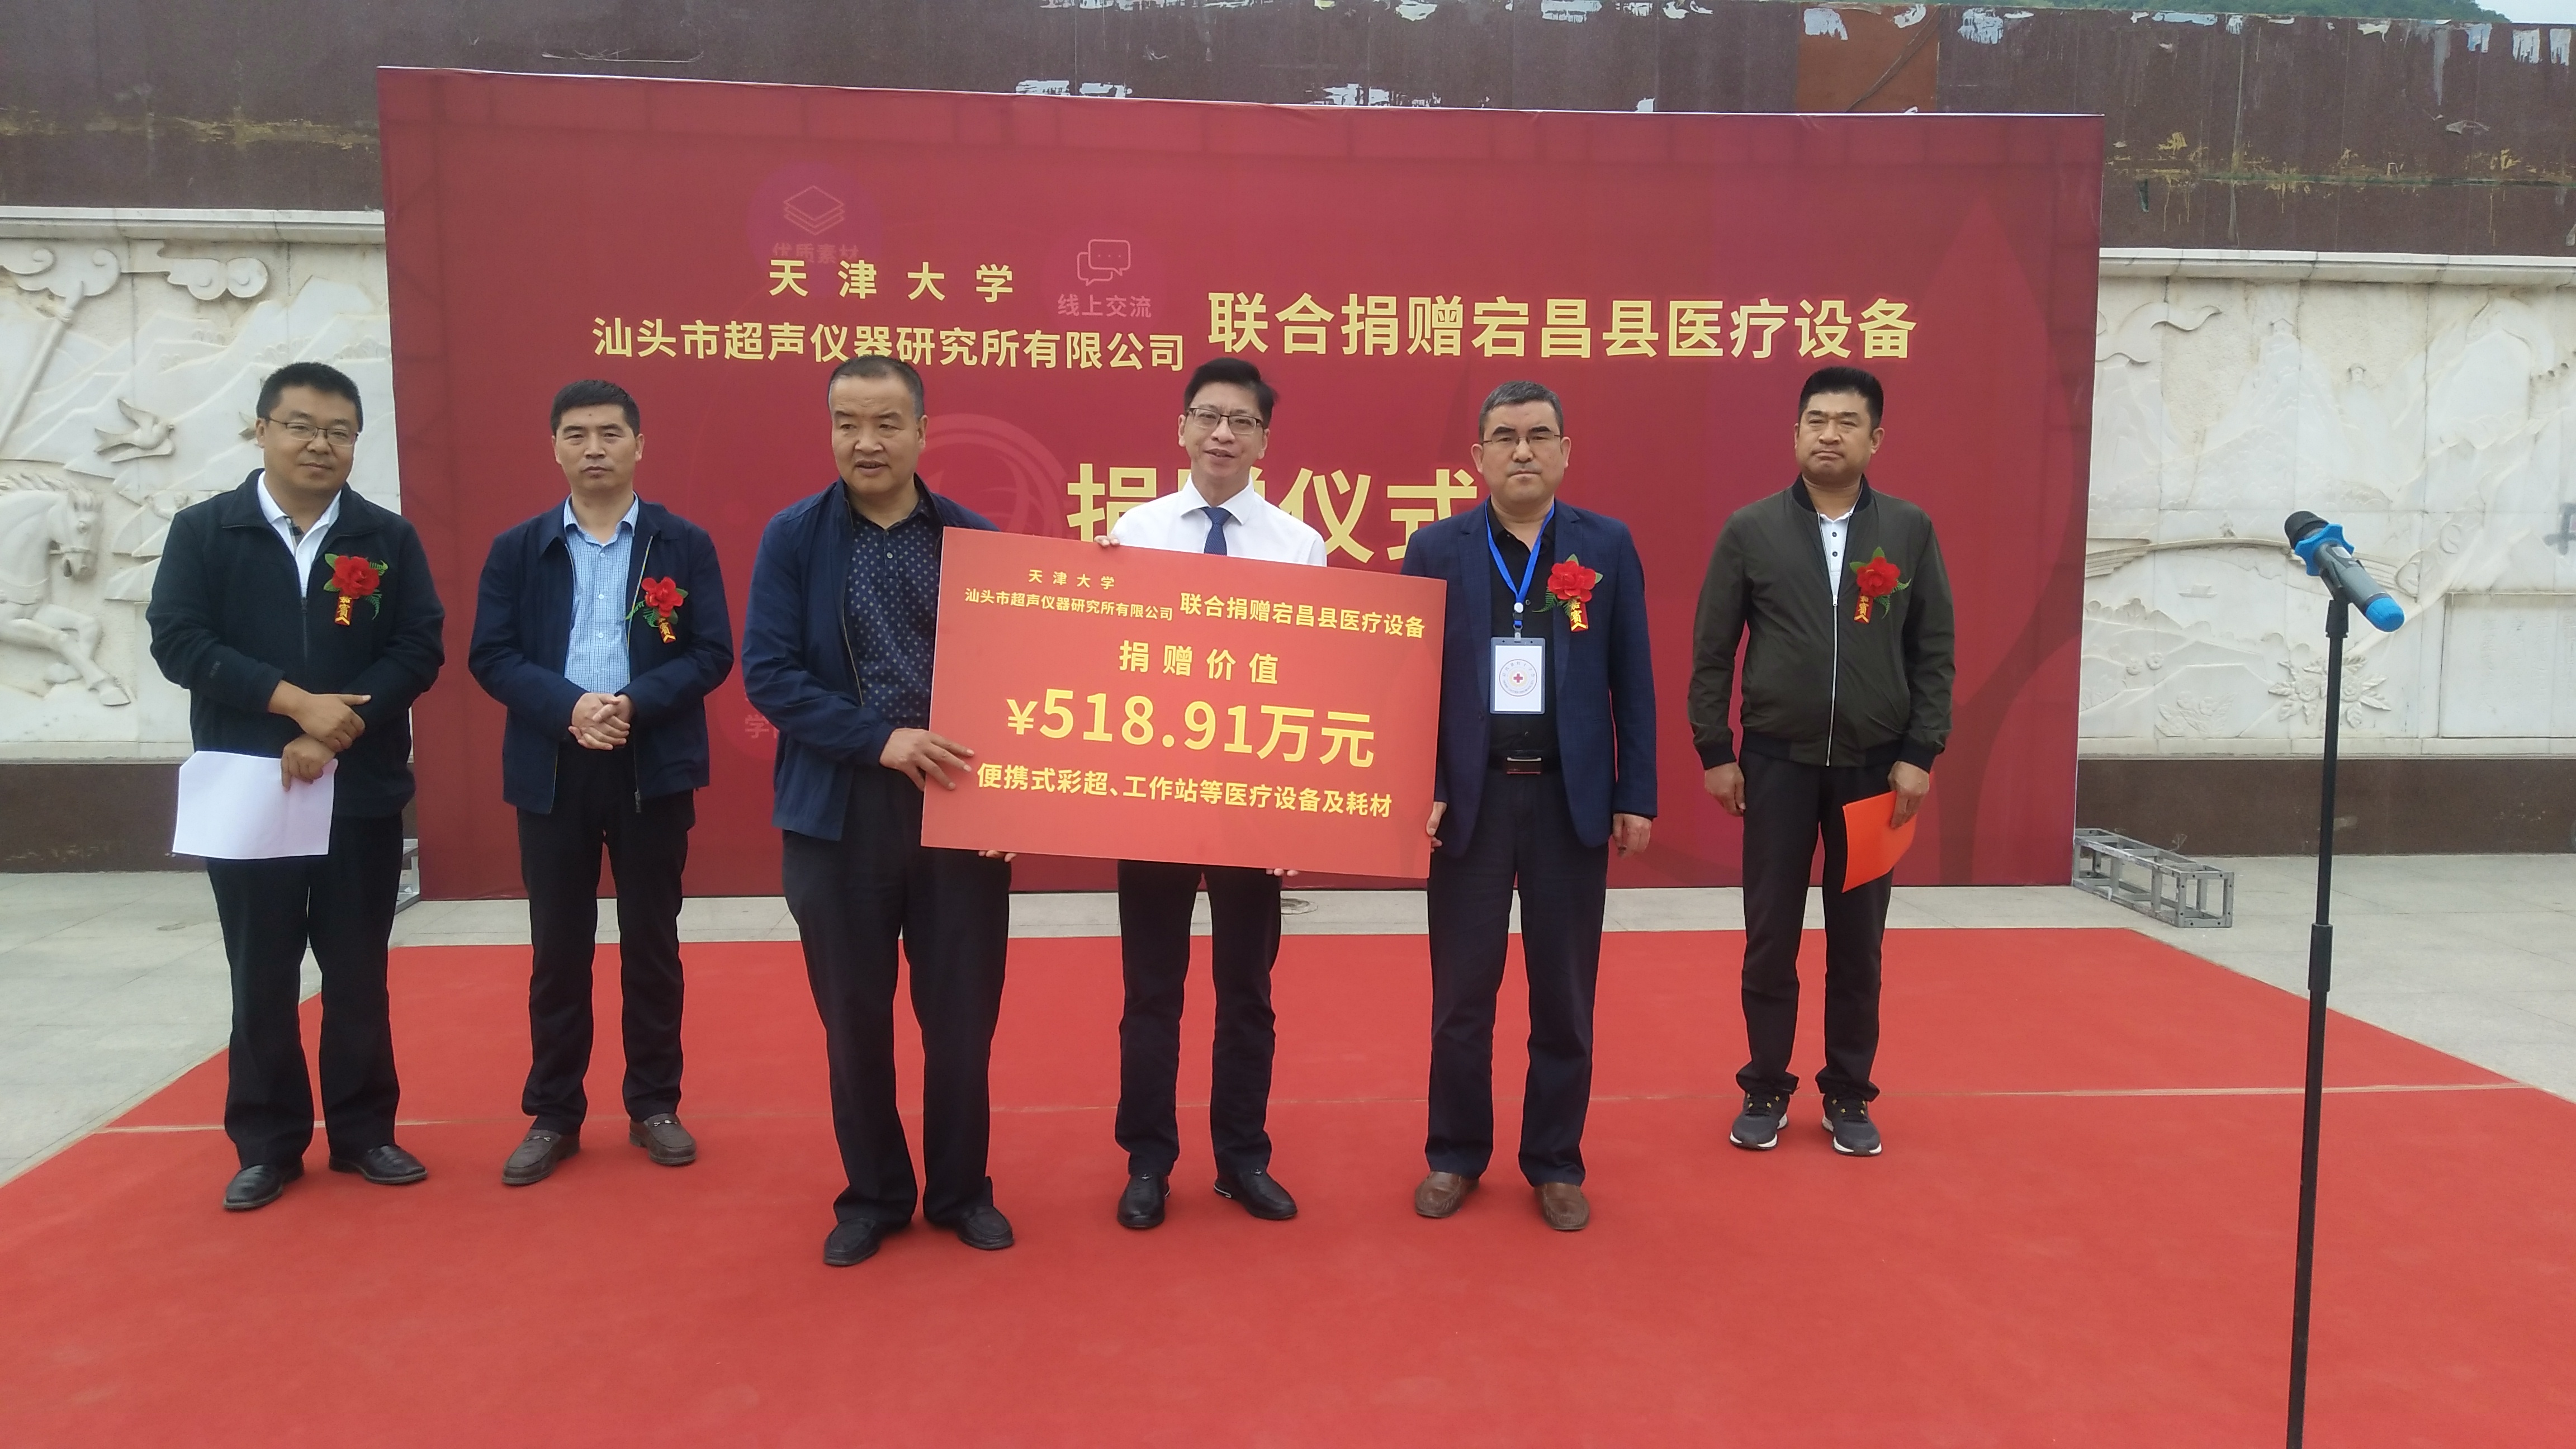 天津大学联合汕超公司联合为宕昌县捐赠27台便携式彩超机及配套设备，价值518.91万元。